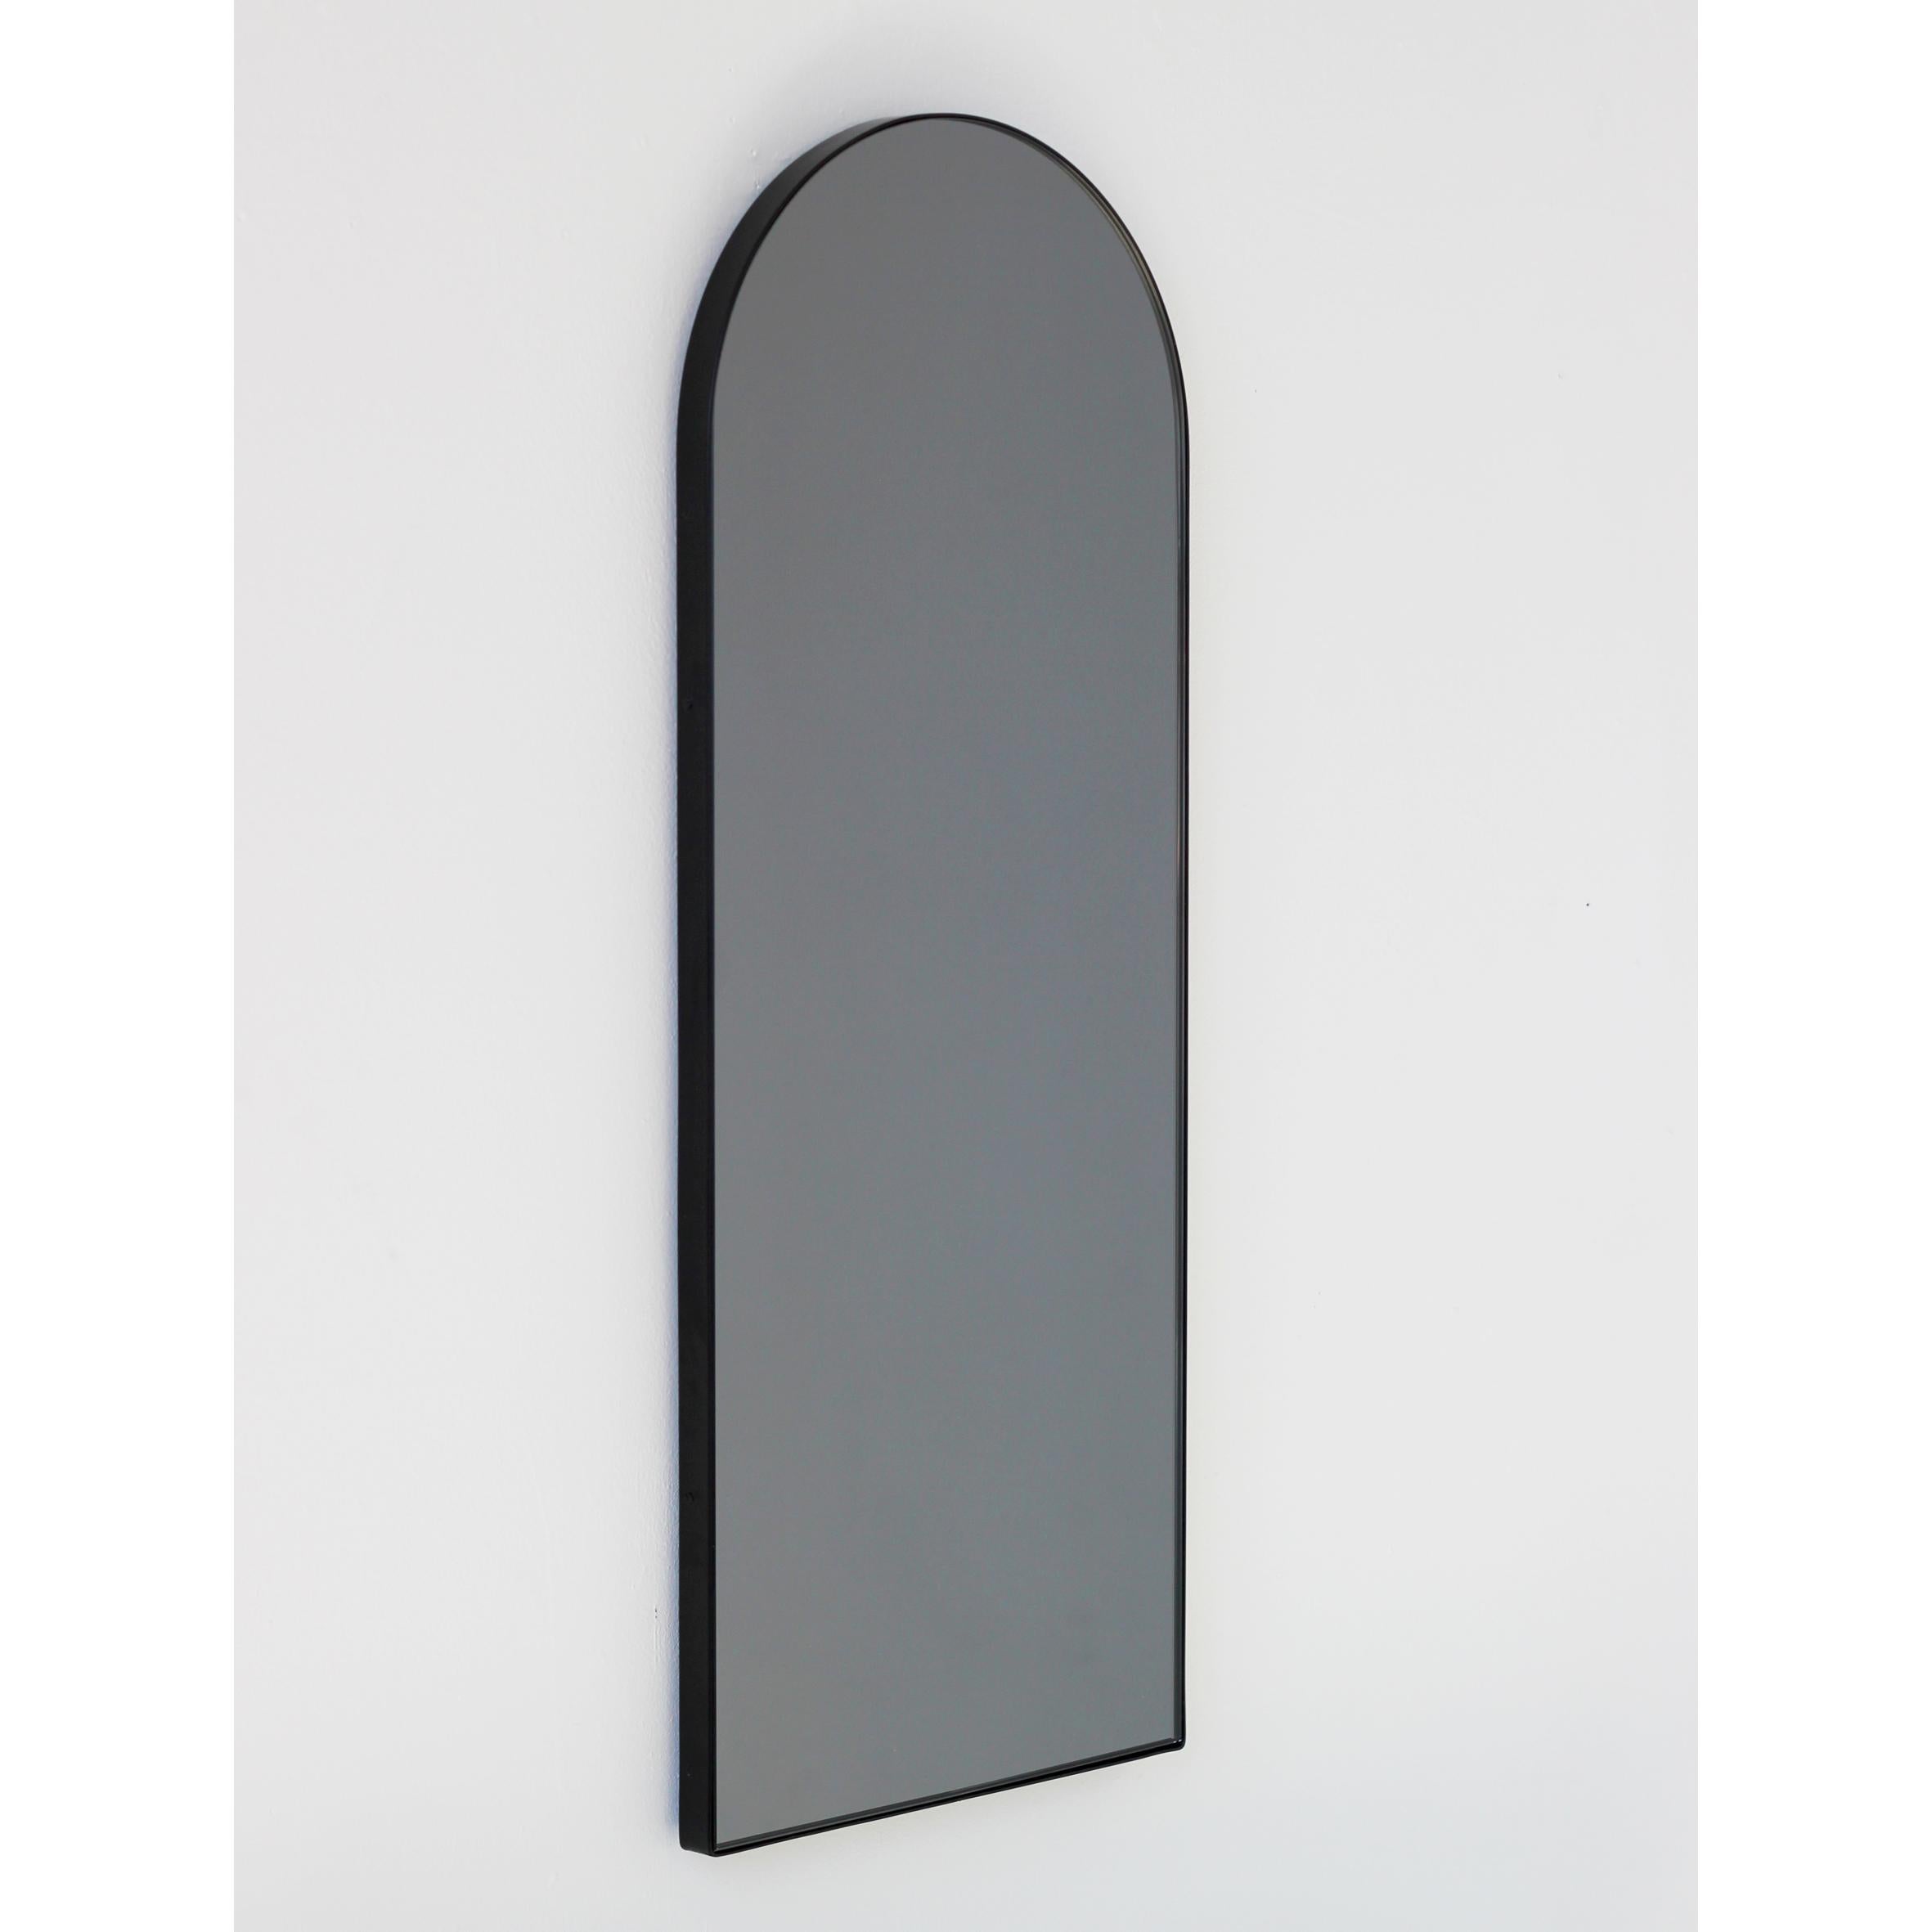 Miroir contemporain teinté noir en forme d'arc avec un élégant cadre noir. Conçu et fabriqué à la main à Londres, au Royaume-Uni.

Les miroirs de taille moyenne, grande et extra-large (37cm x 56cm, 46cm x 71cm et 48cm x 97cm) sont équipés d'un